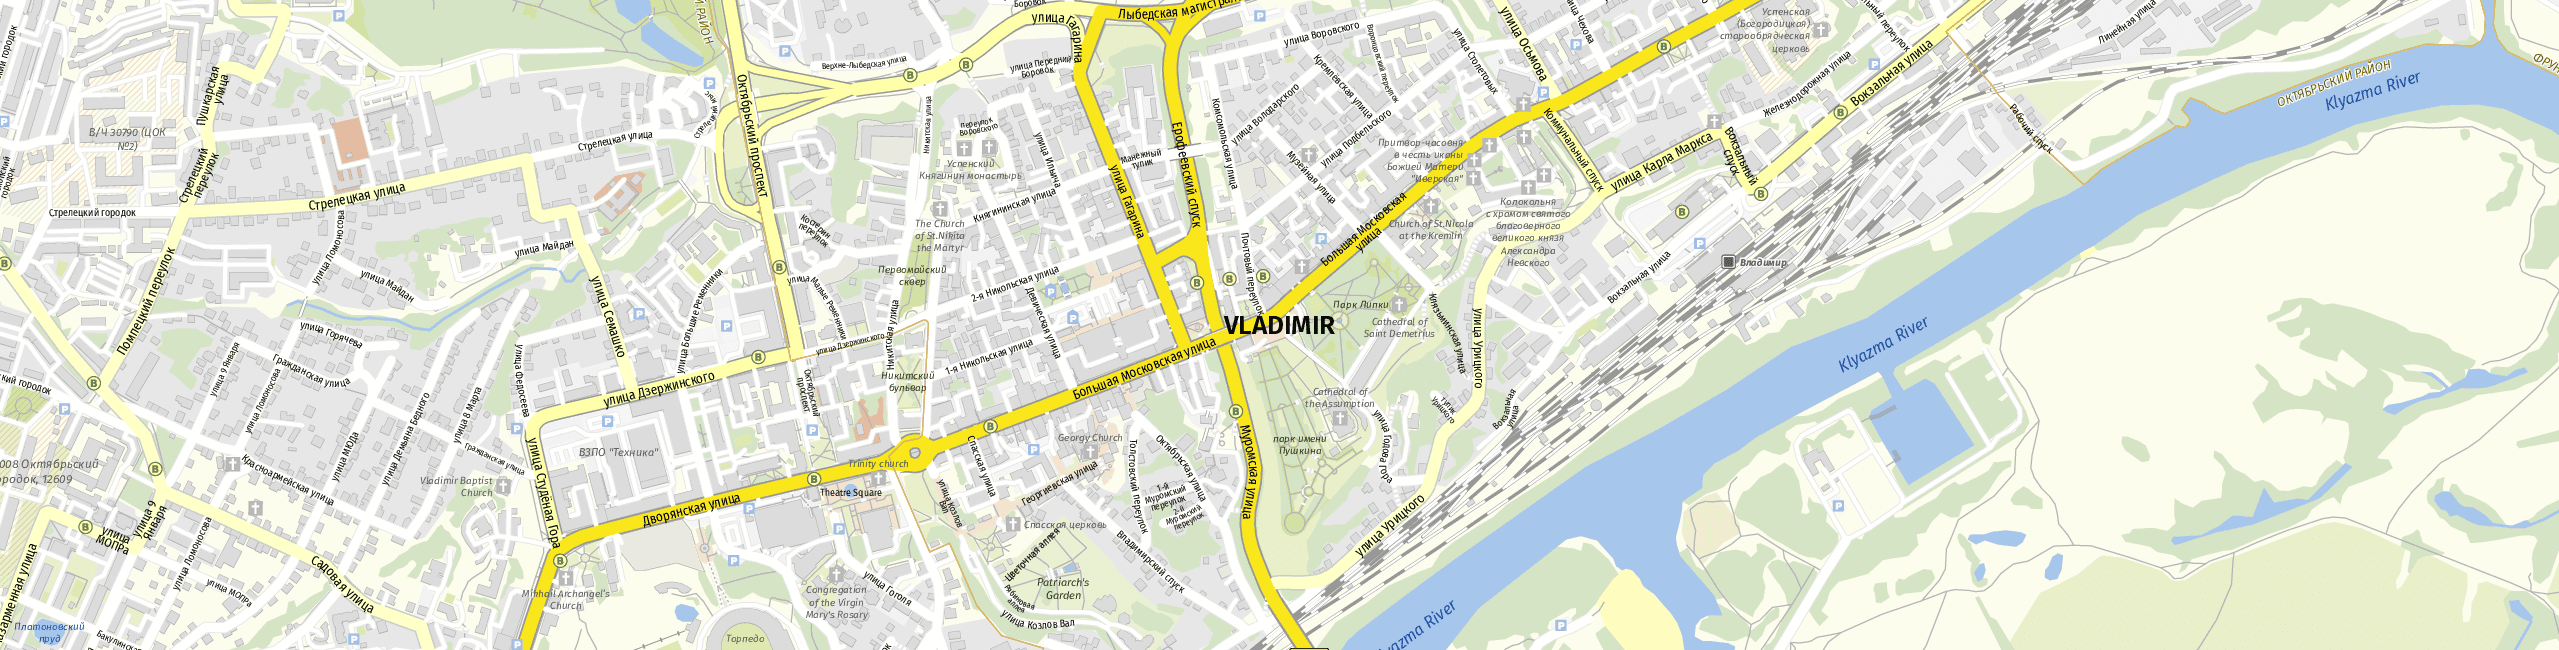 Stadtplan Vladimir zum Downloaden.